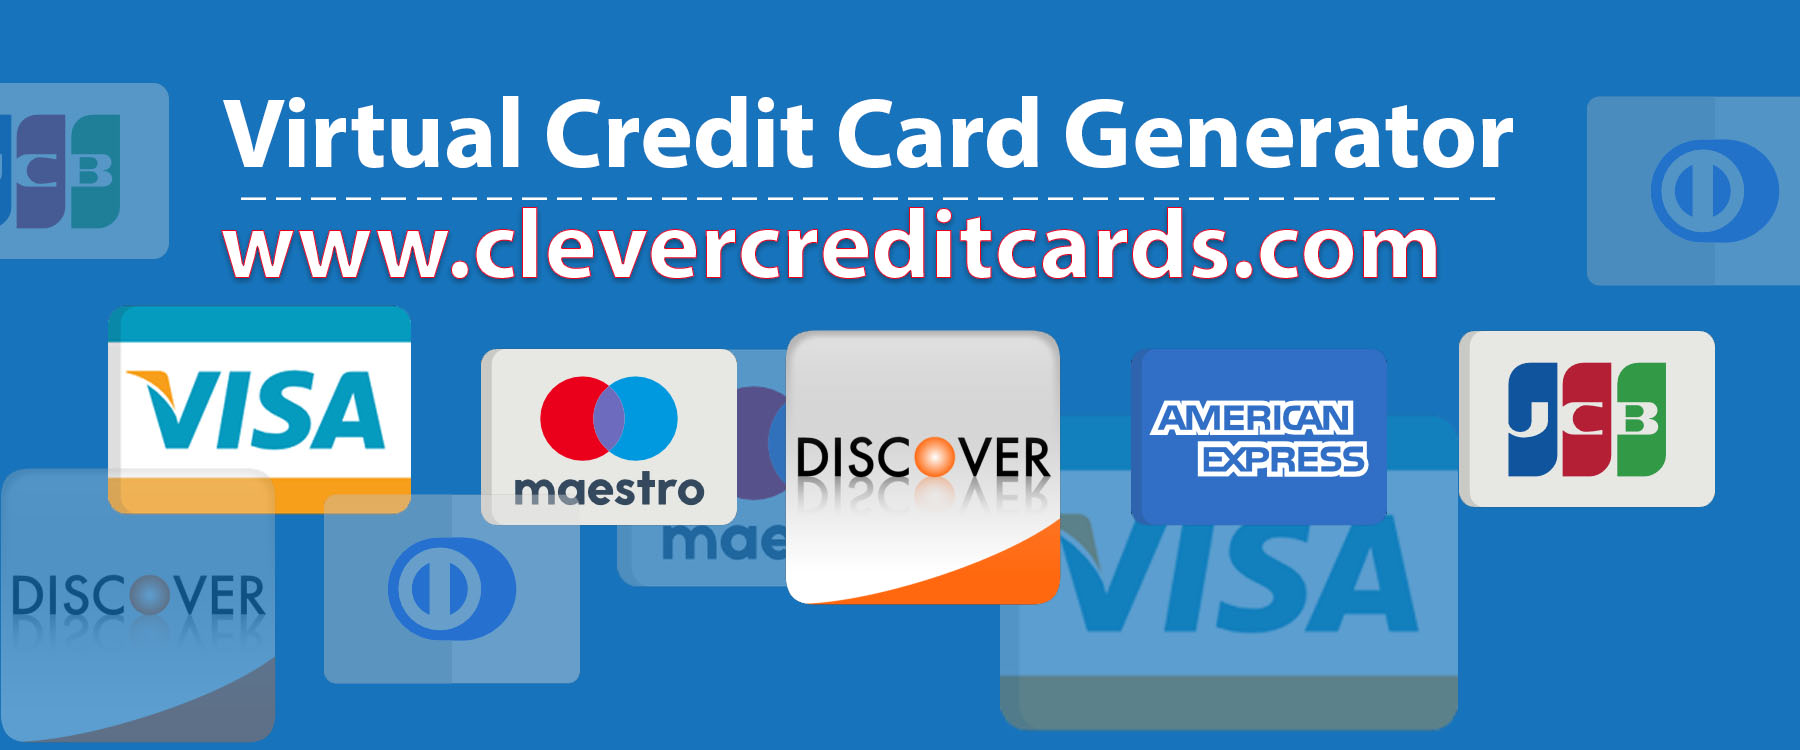 Geldige virtuele creditcards voor PayPal